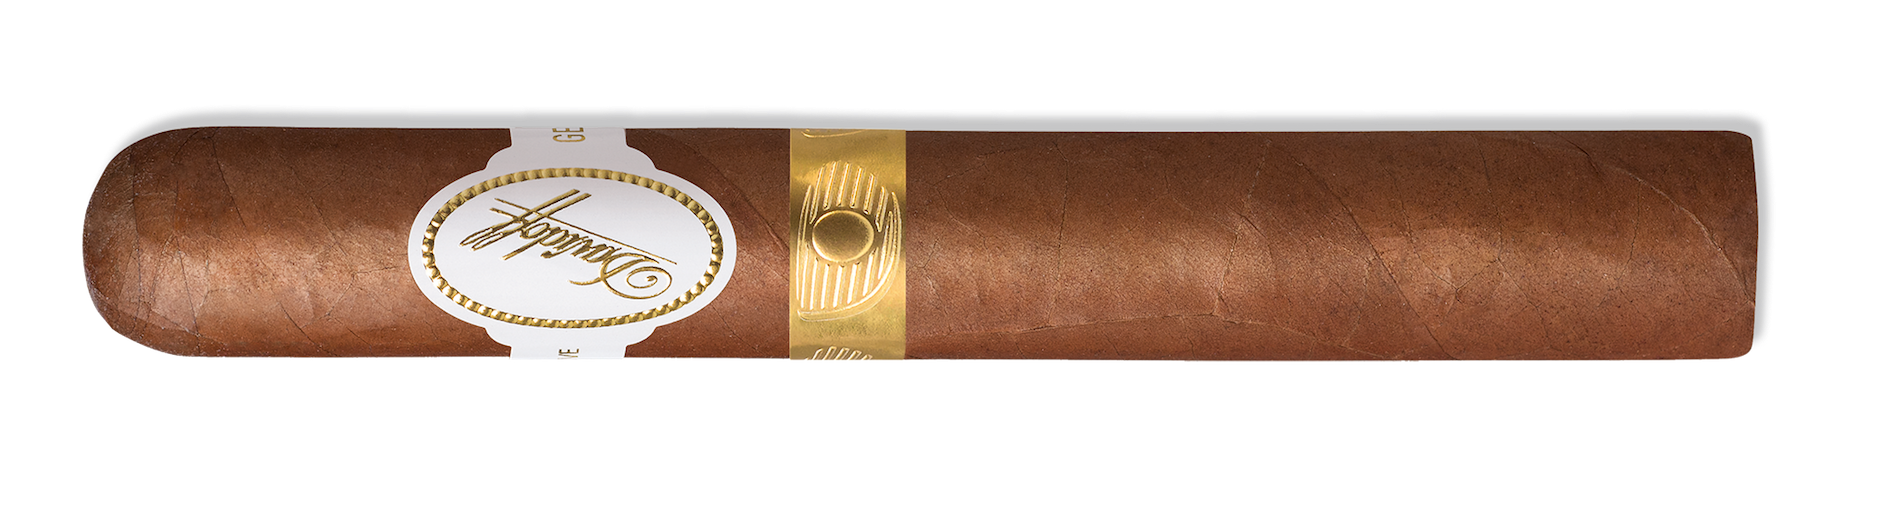 Davidoff Golf Scorecard Edition 2016 Cigar Gold